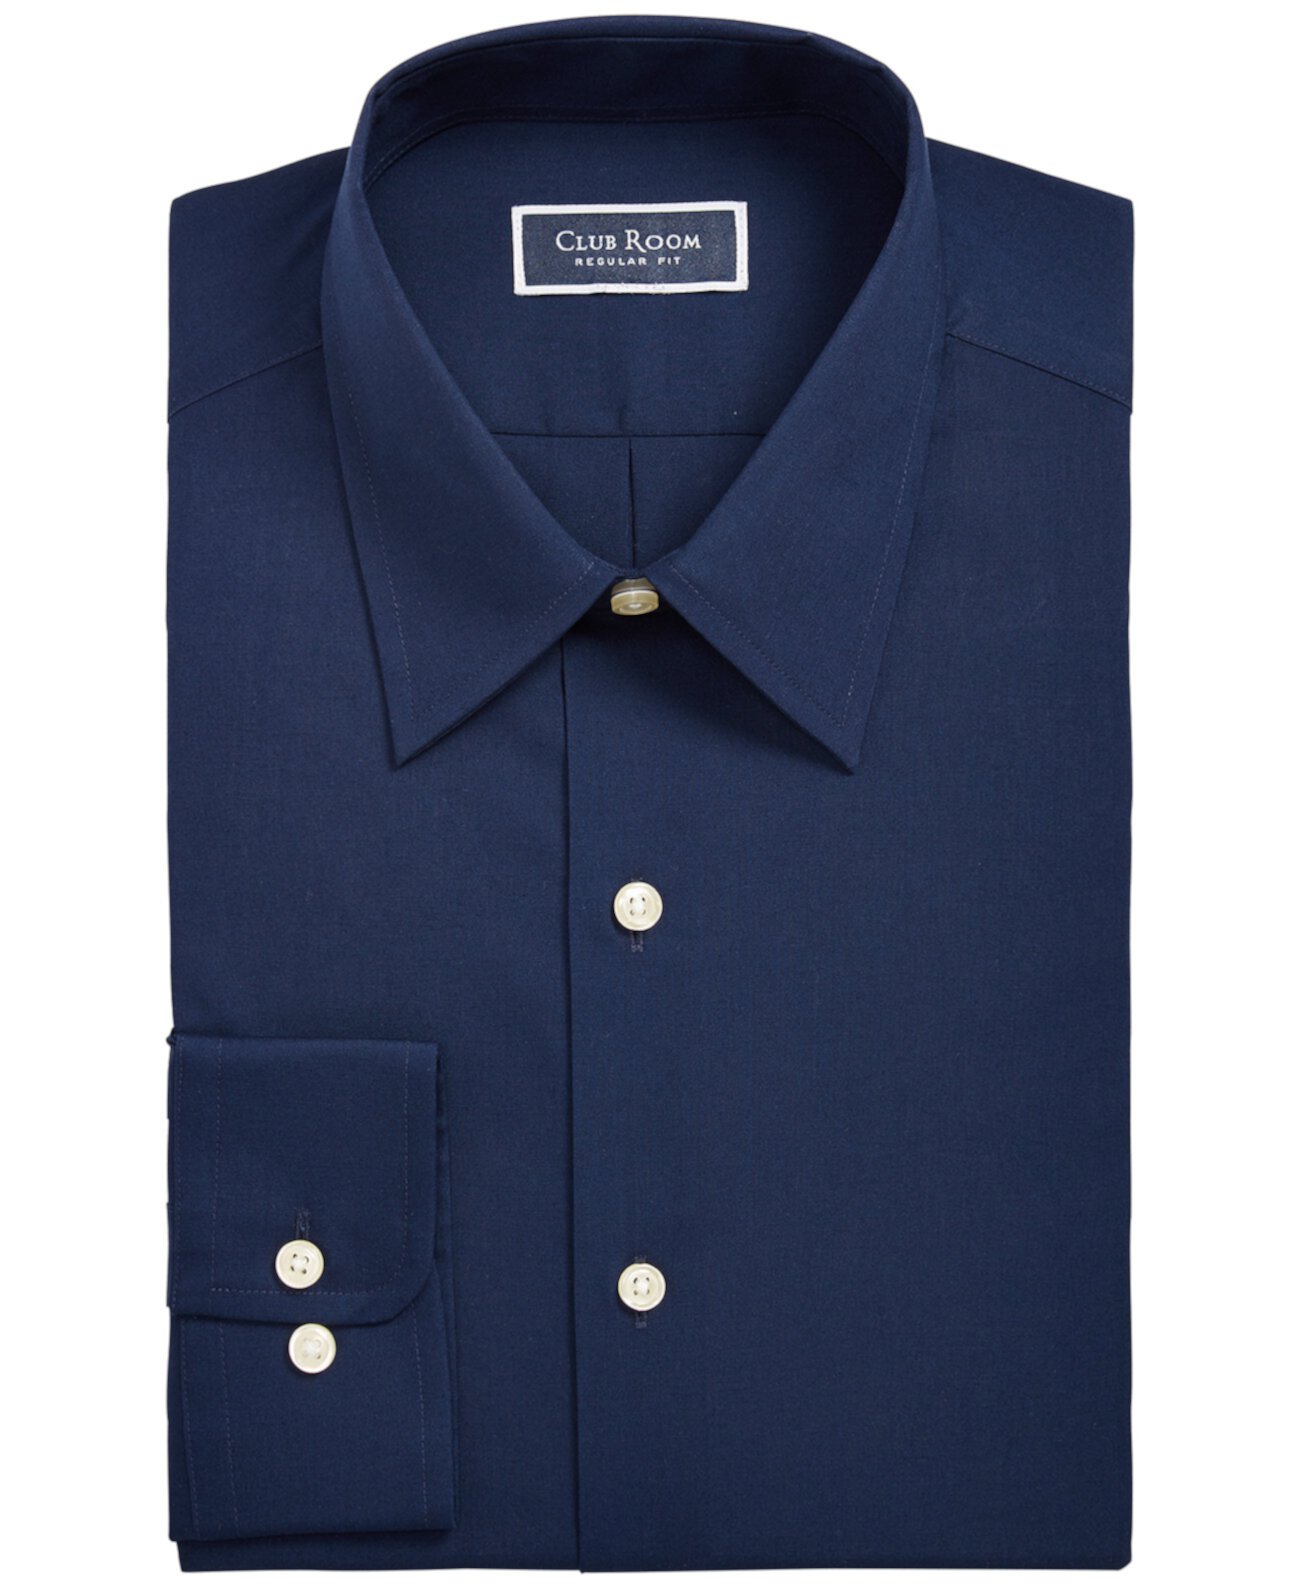 Мужская однотонная рубашка классического / стандартного кроя, созданная для Macy's Club Room